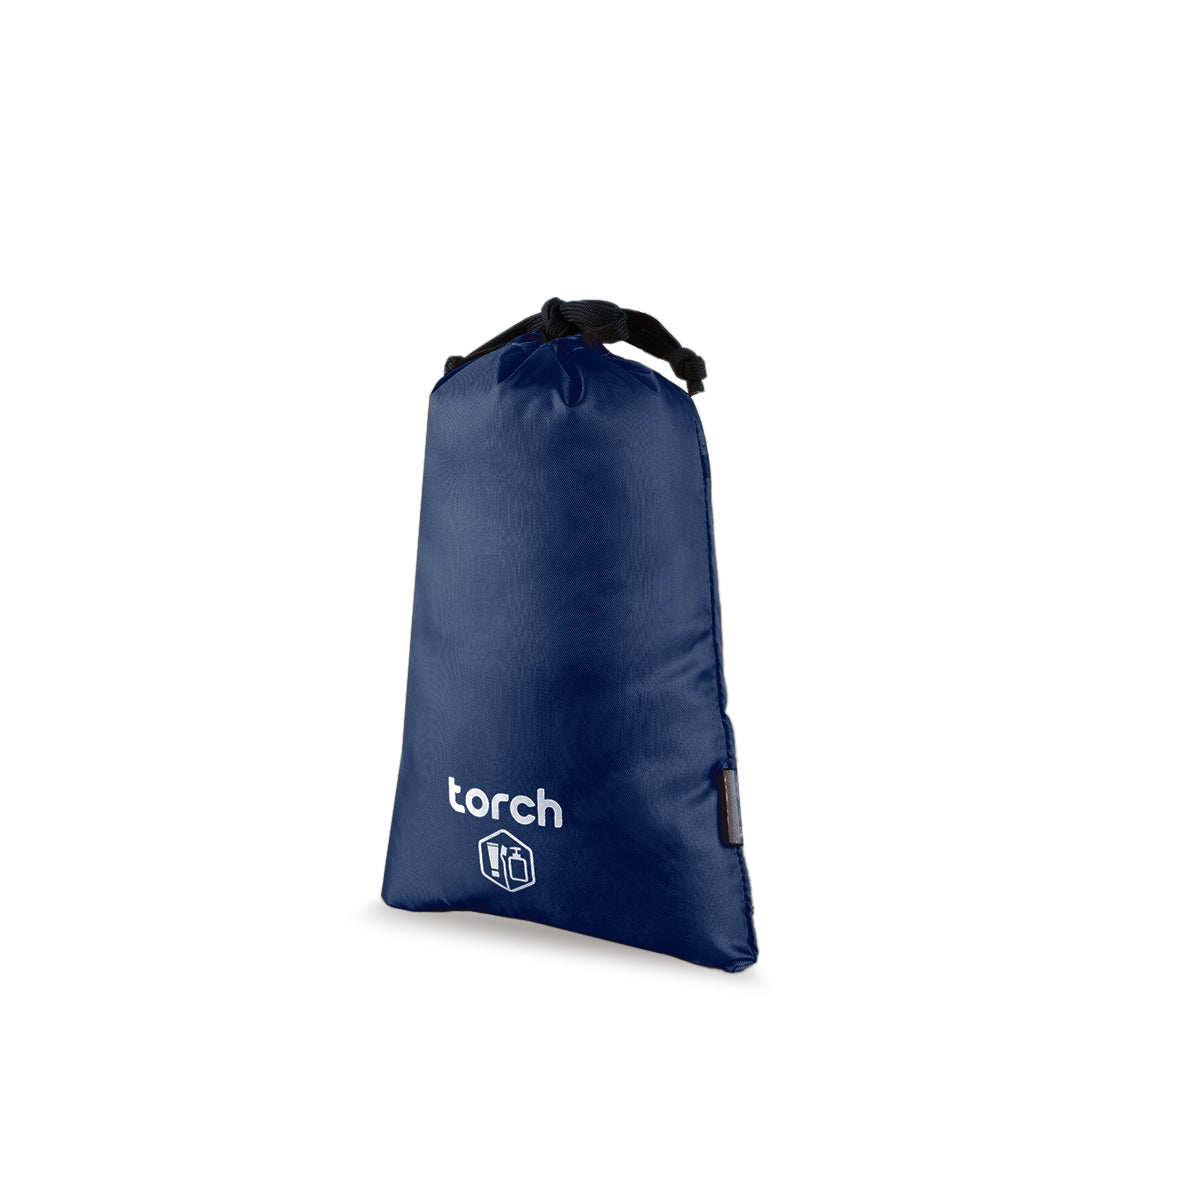 Paket Gratis - Ishikari Backpack Gratis Dafi Drawsting Bag Small + Dafi Multi Pouch M